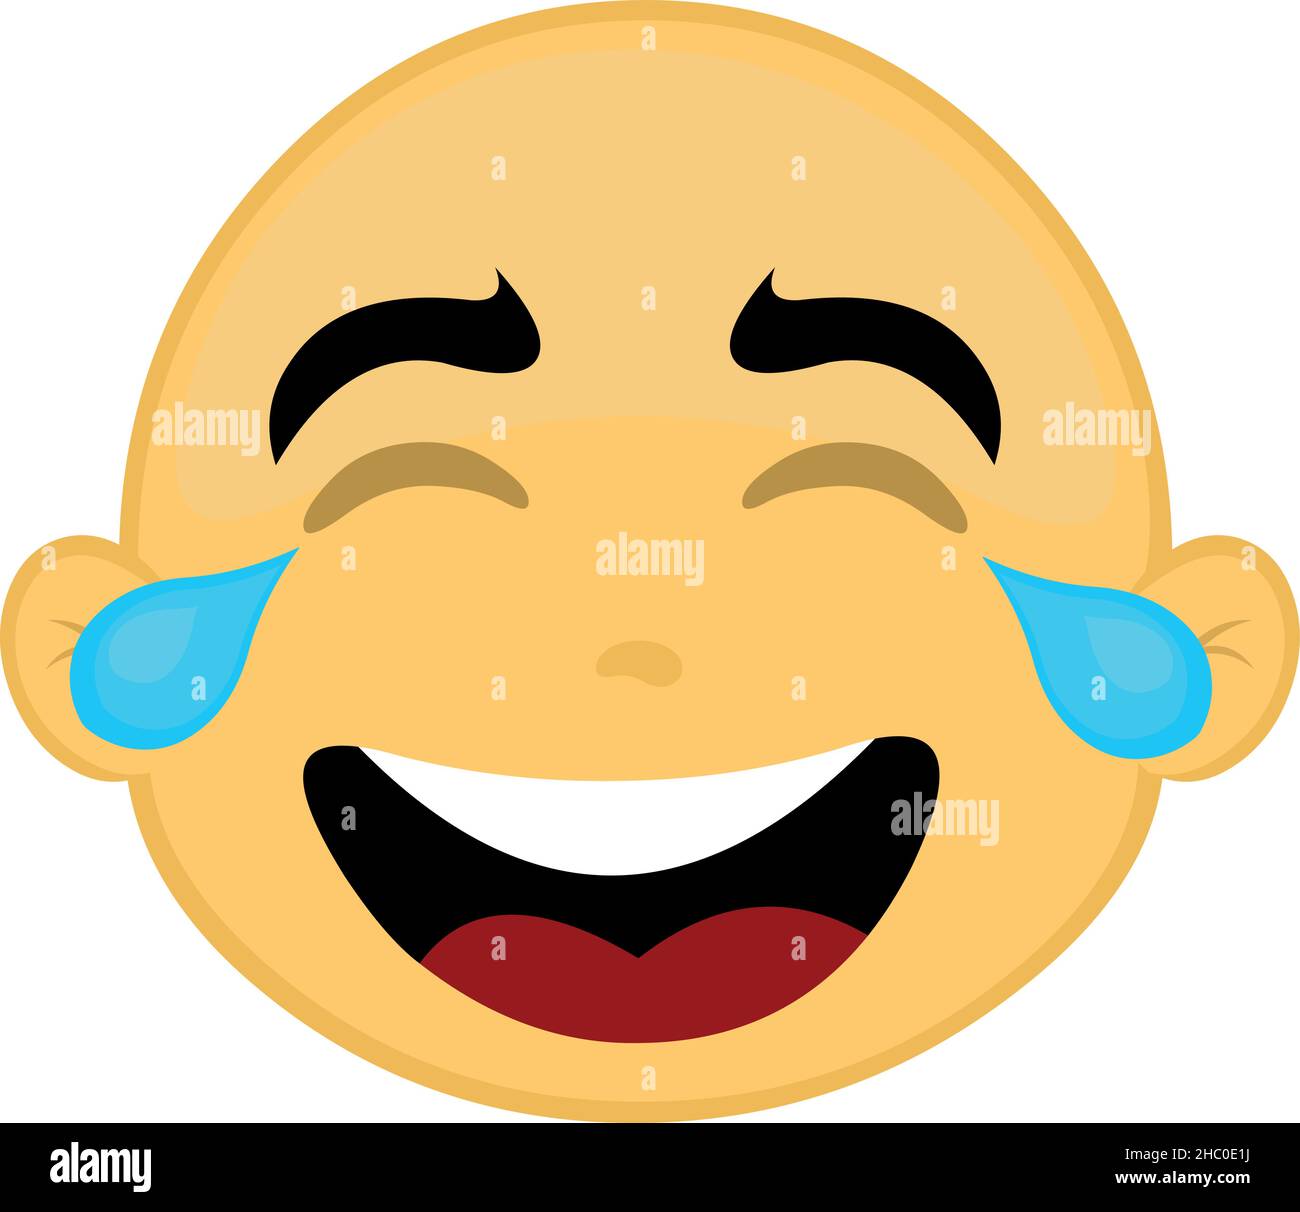 Vektor-Illustration des Gesichts einer kahlen und gelben Zeichentrickfigur, mit Tränen der Freude Stock Vektor